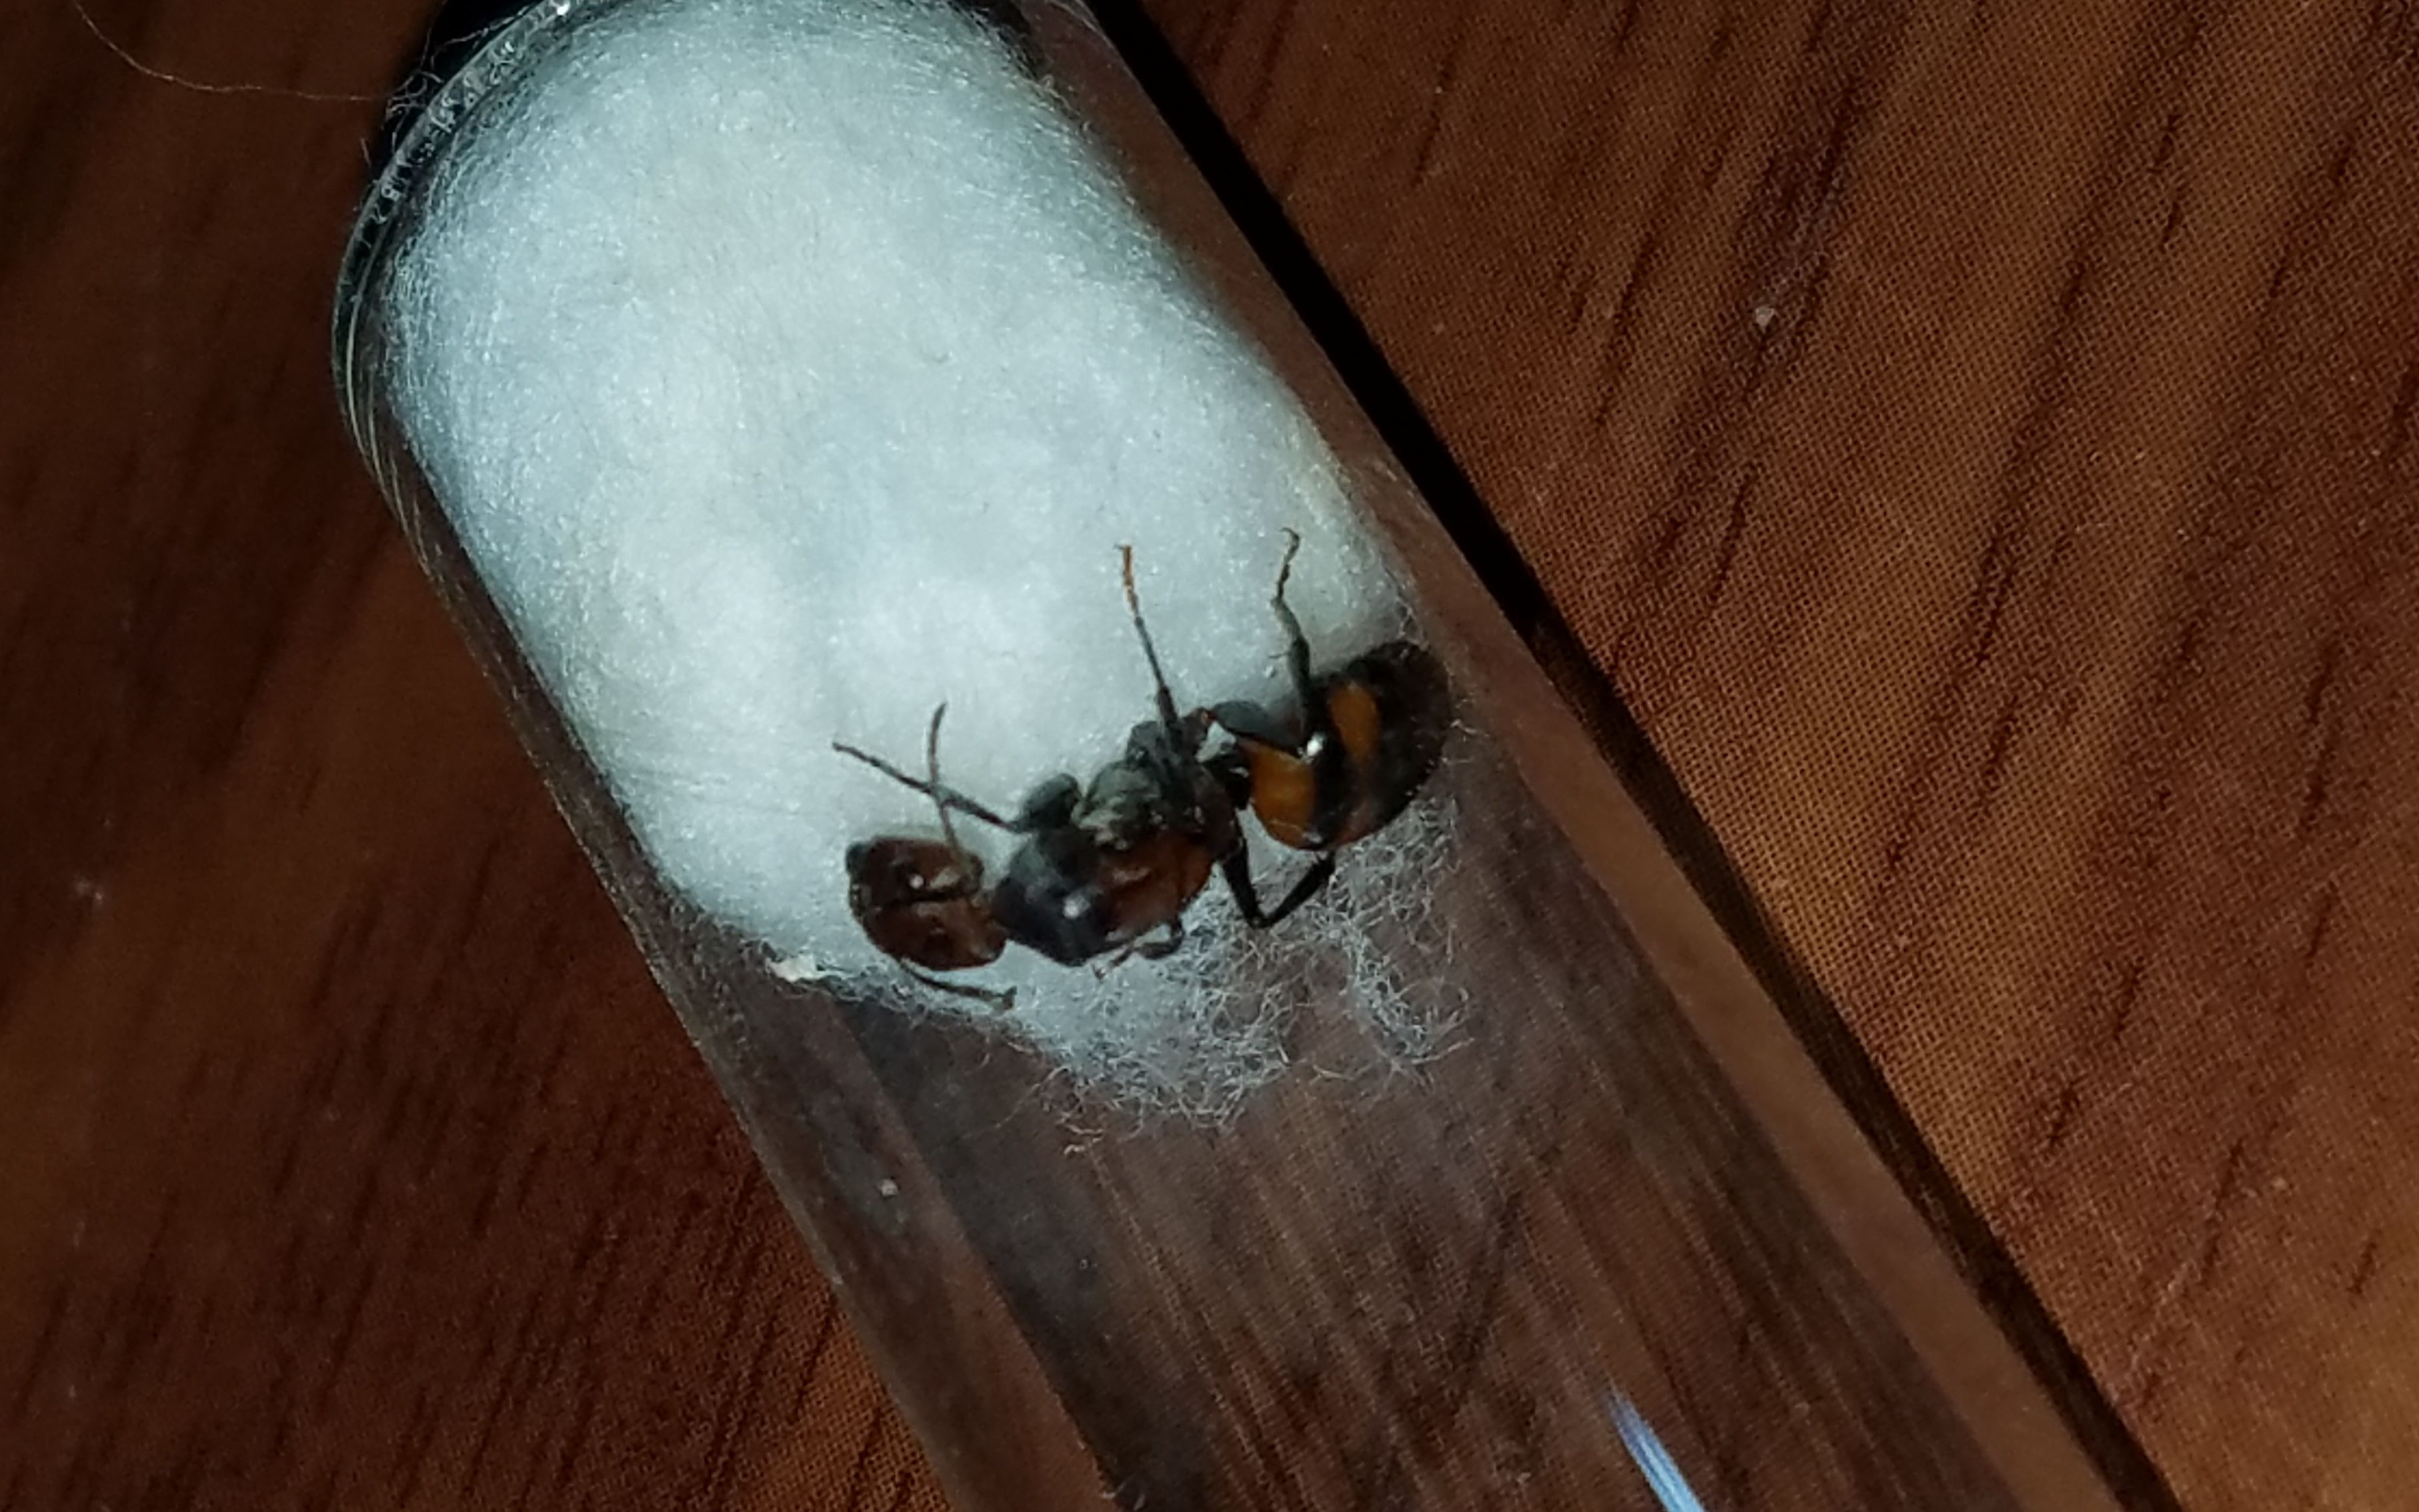 日本弓背蚁卵孵化过程图片